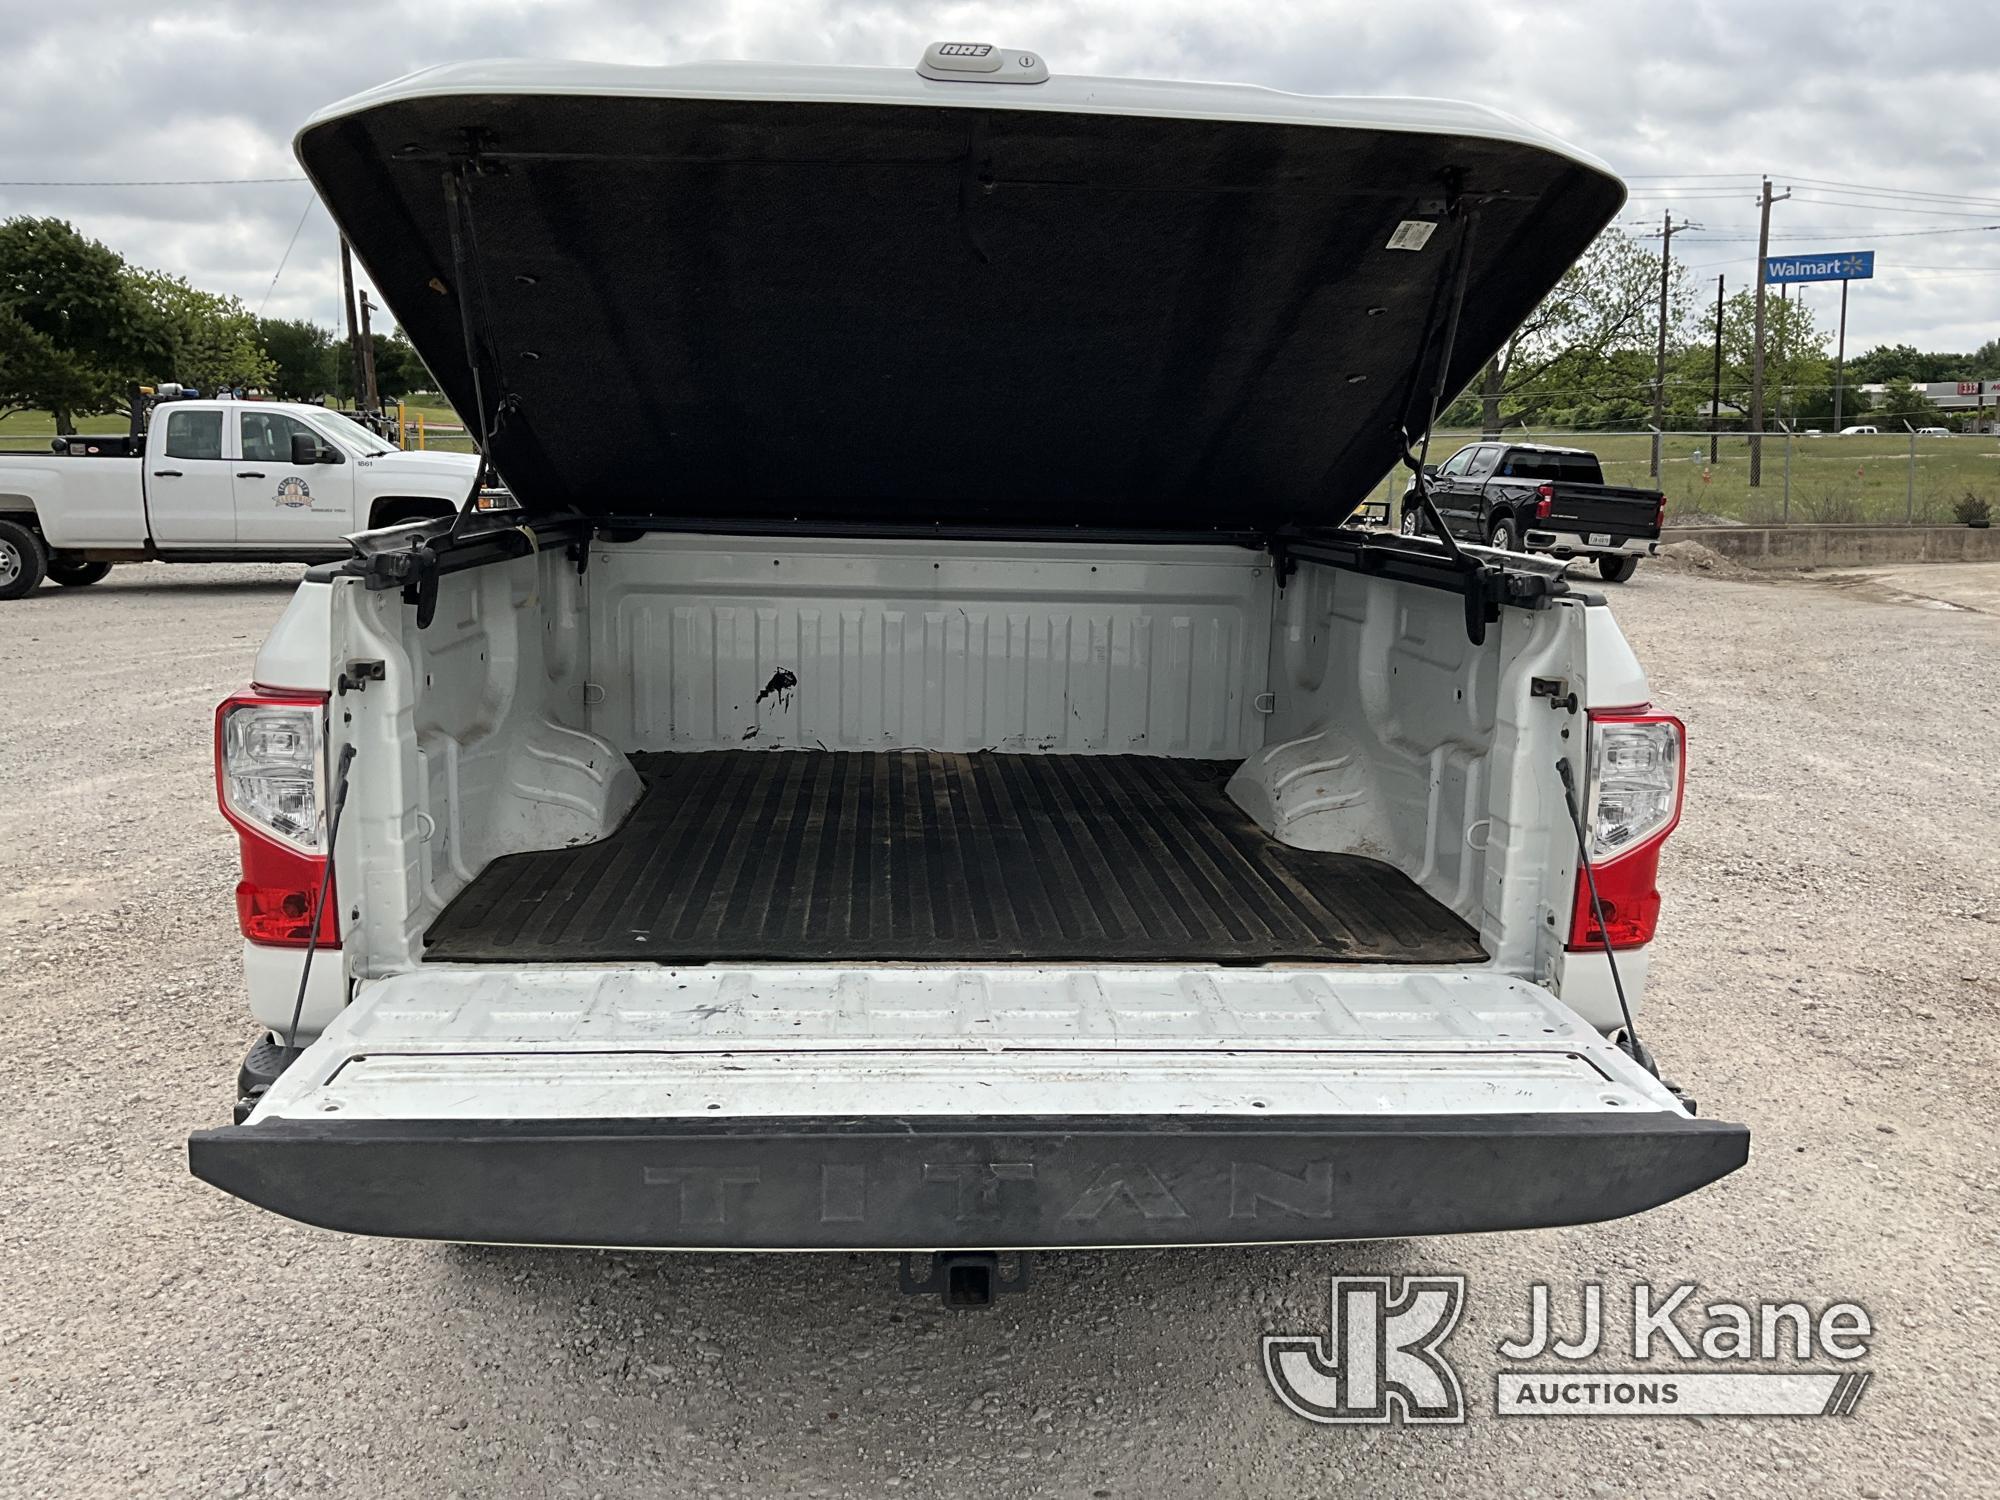 (Azle, TX) 2017 Nissan Titan Platinum Reserve 4x4 Crew-Cab Pickup Truck Runs & Moves) (Paint Damage,